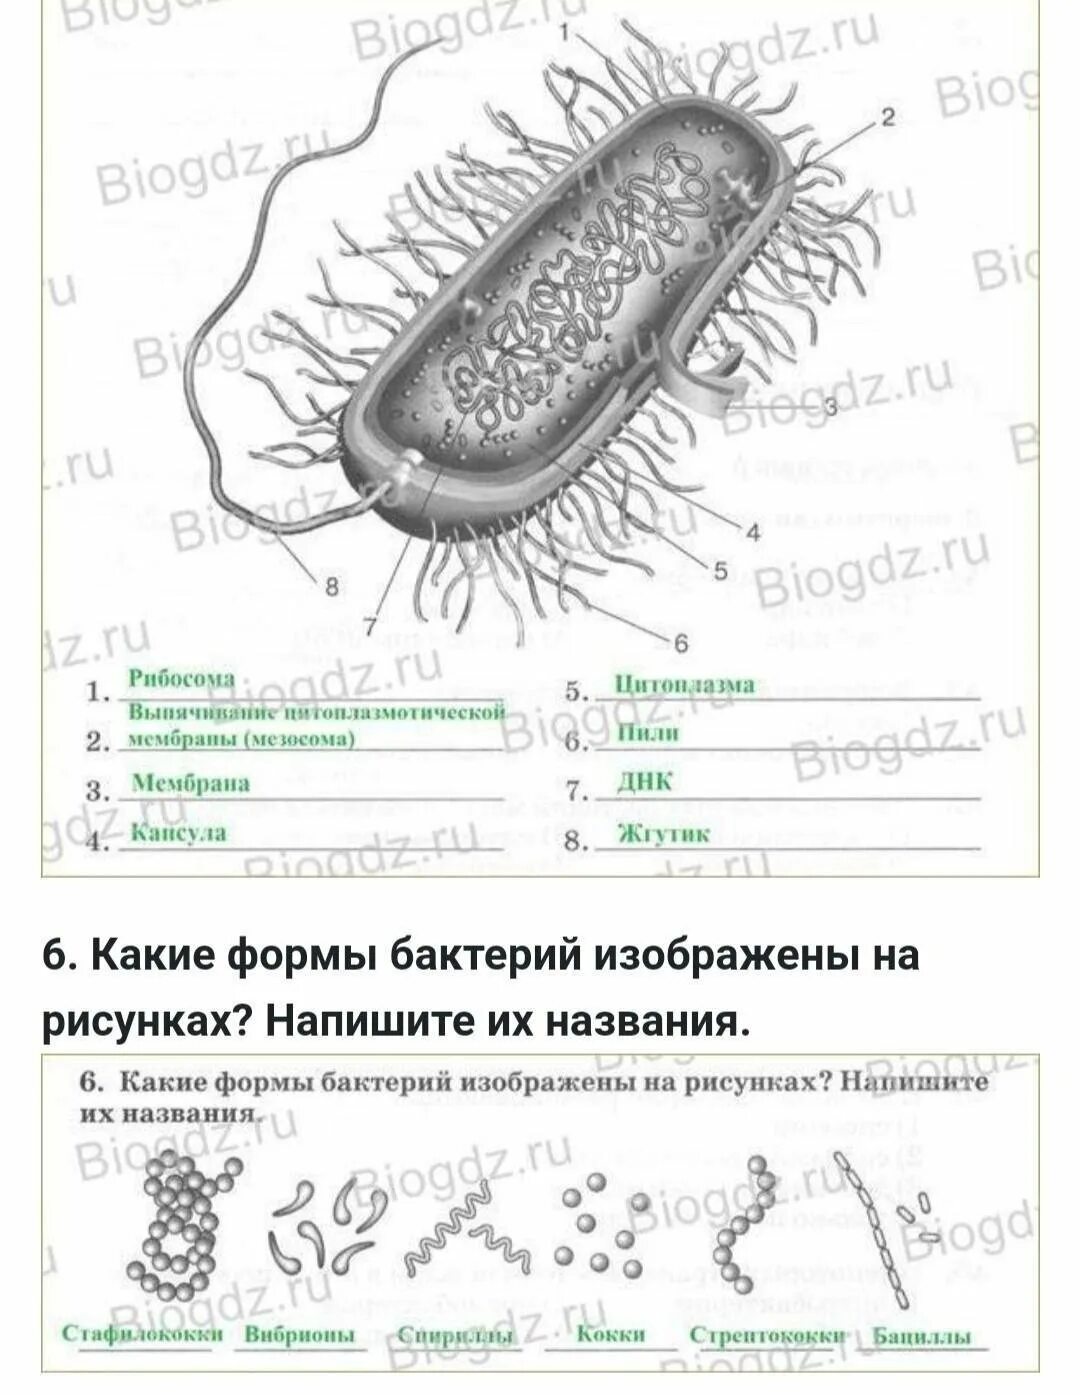 Прокариоты задания. Эубактерии строение бактериальной клетки. Строение покариотической 7клетки. Строение бактериальной клетки 7 класс биология. Схема строения бактериальной клетки биология 7 класс.